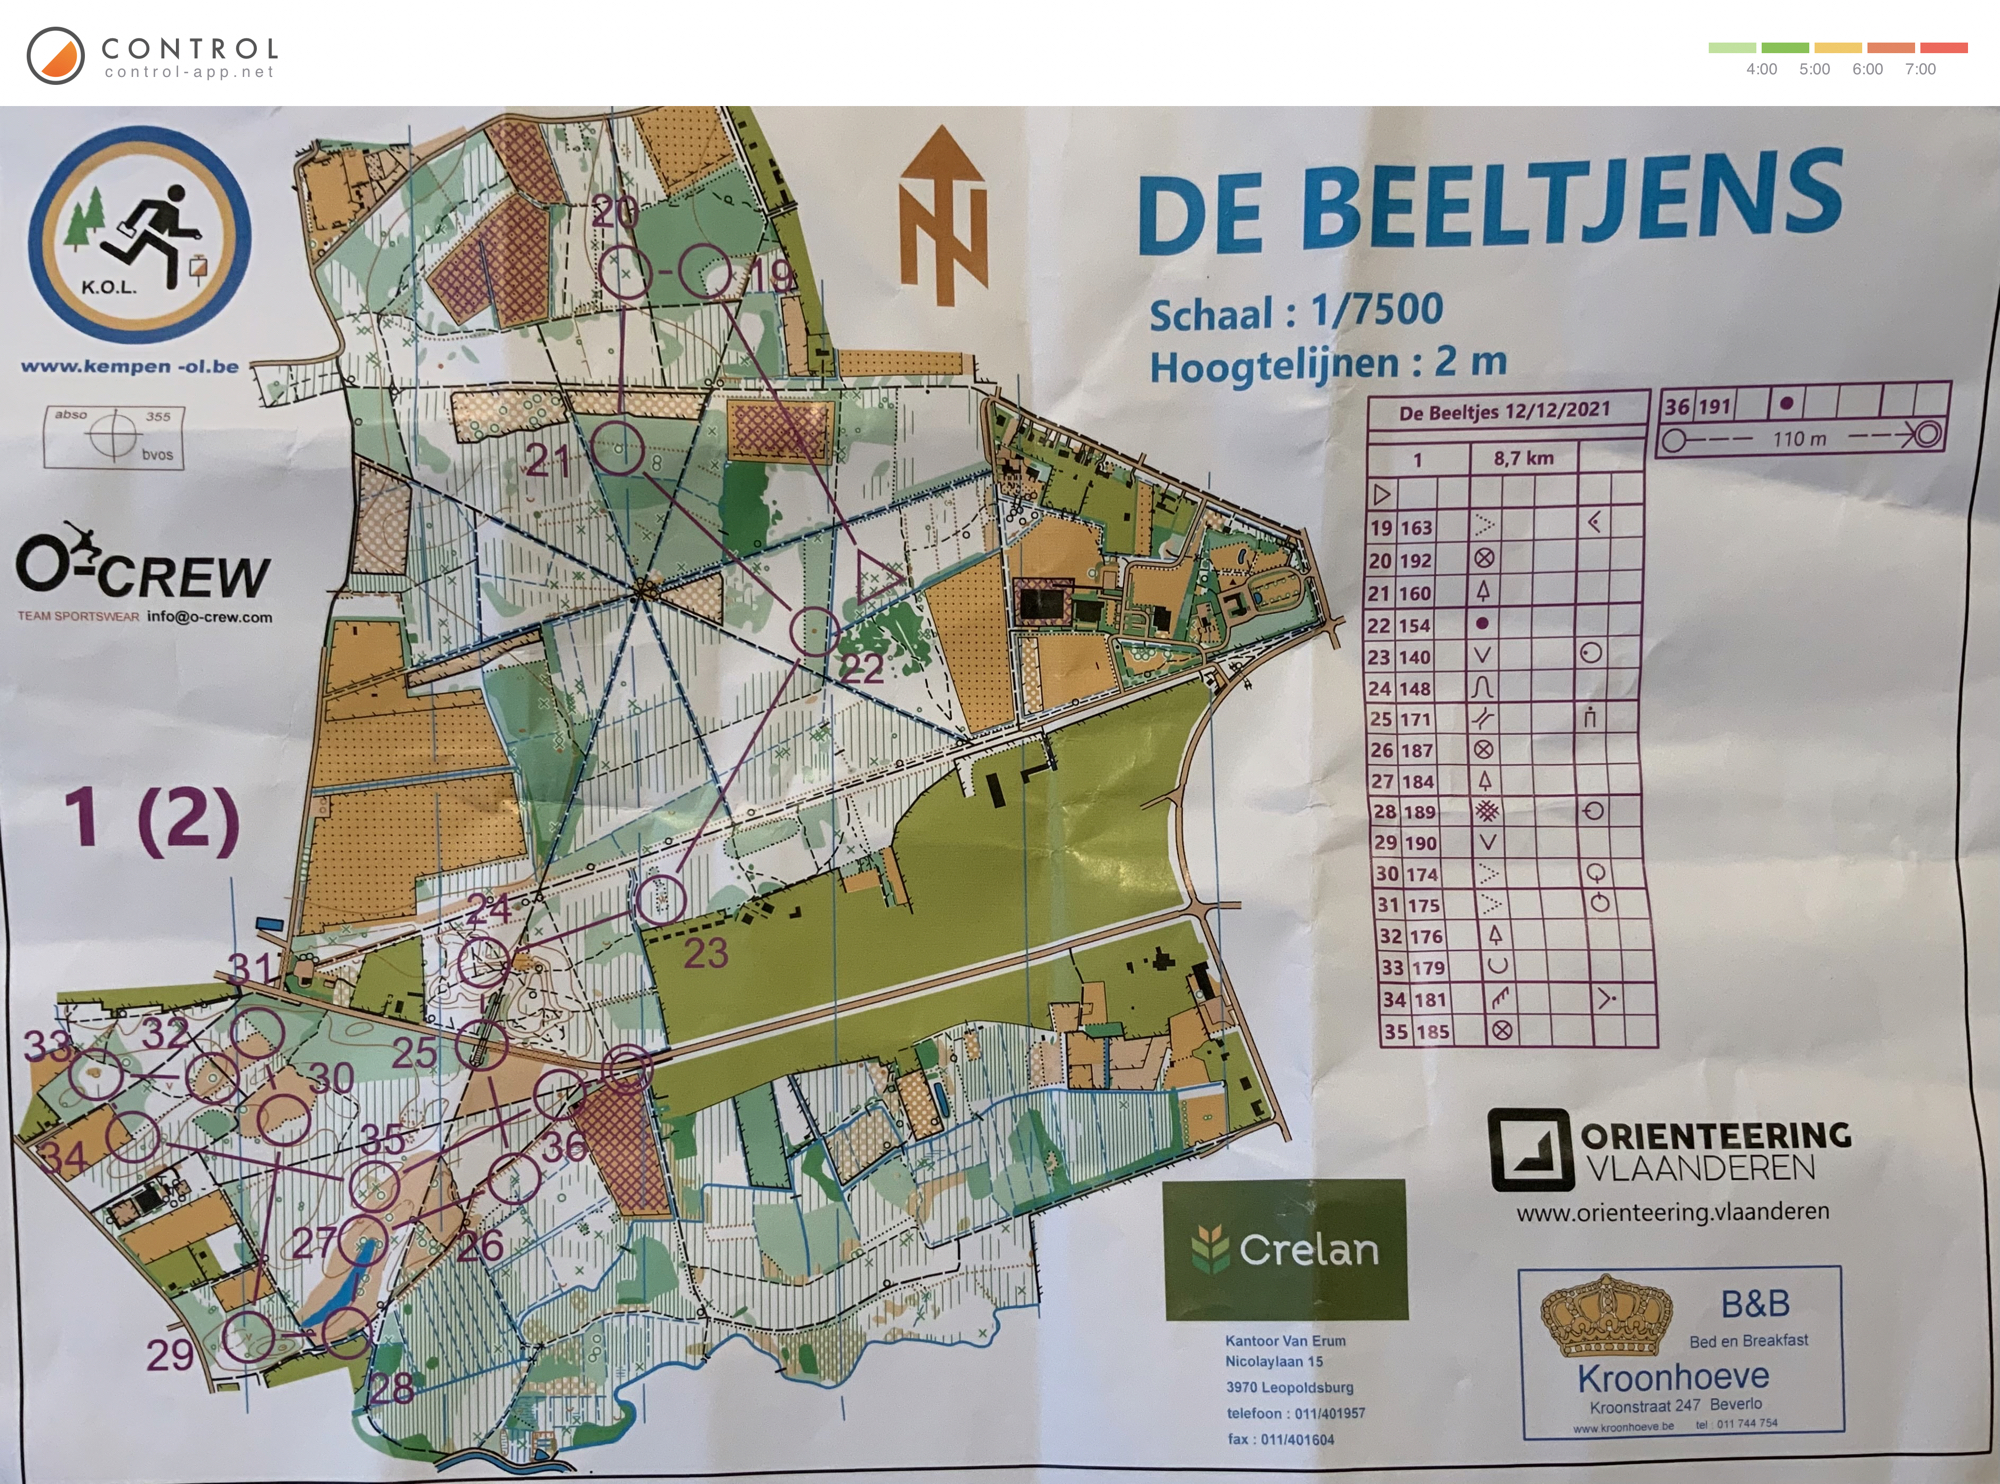 Regionale de Beeltjens - omloop 1 (kaart 2) (12.12.2021)